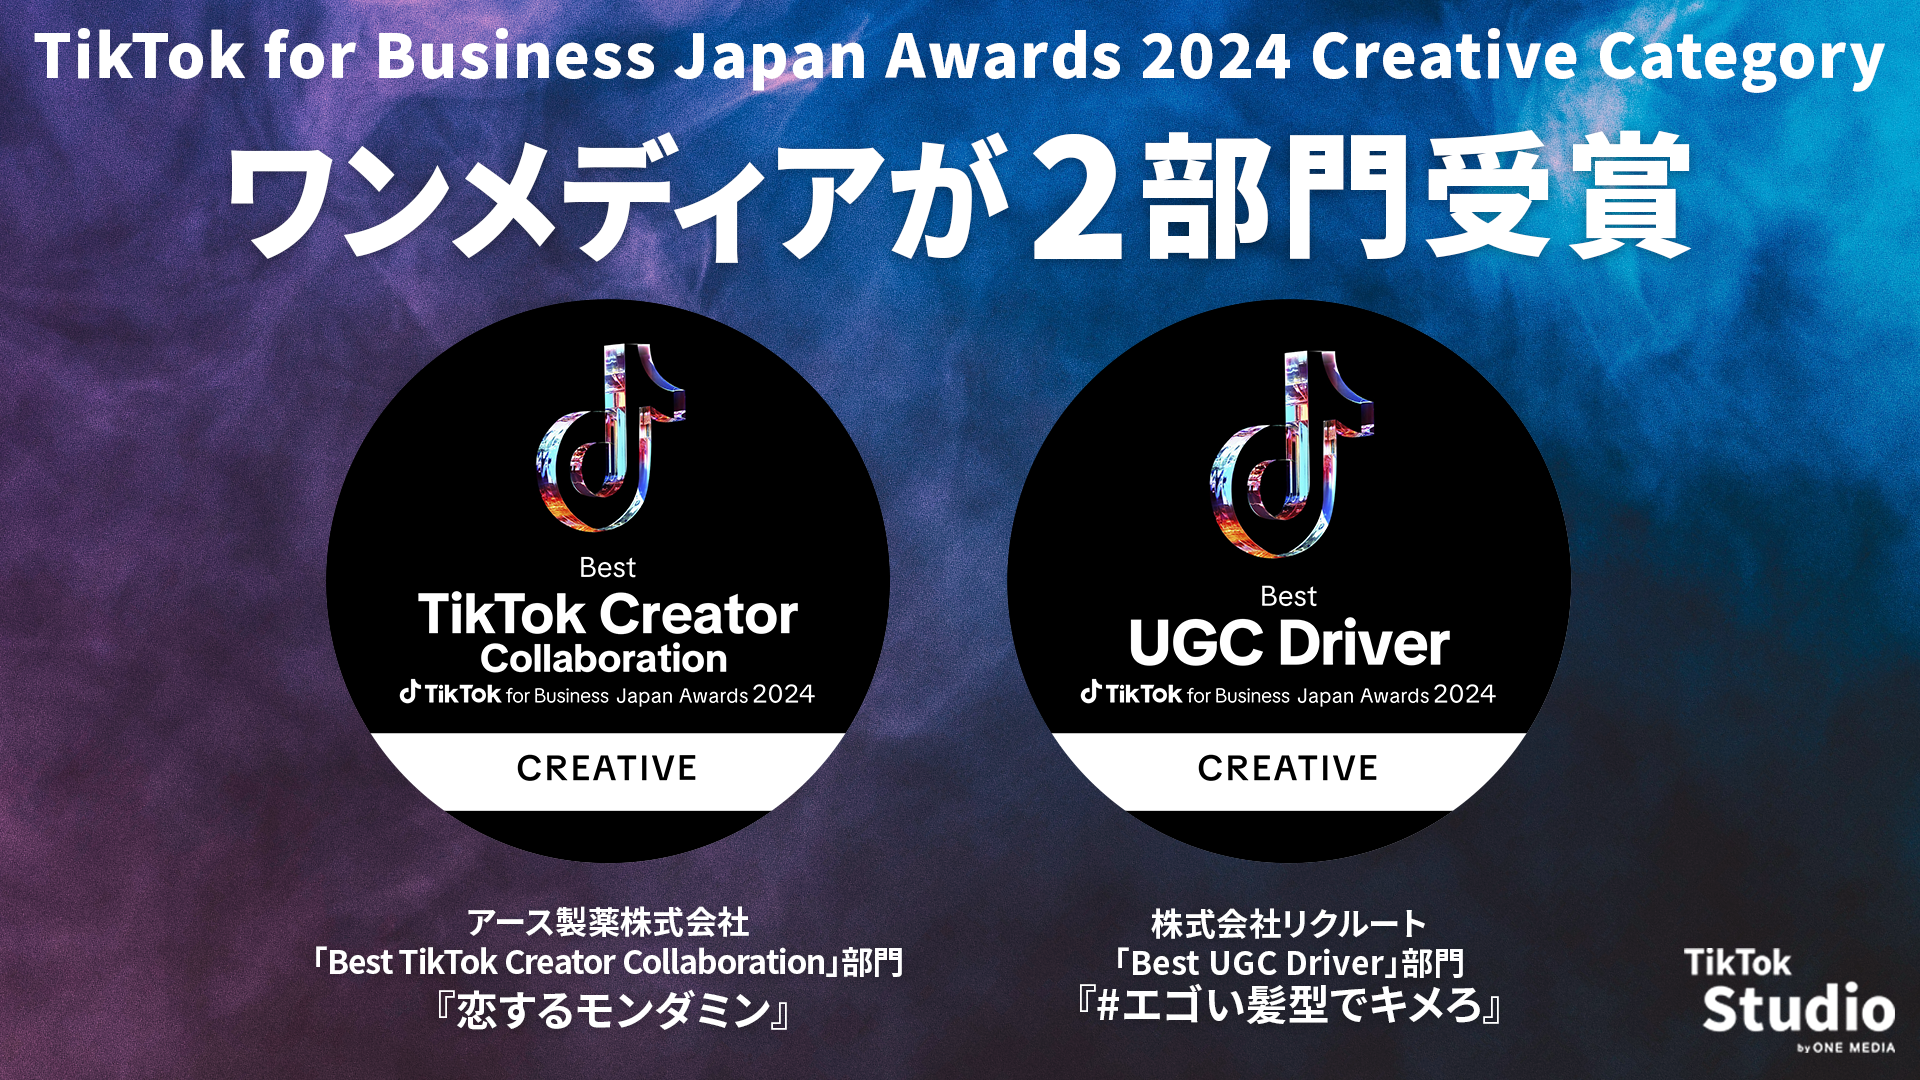 ワンメディアが手掛けたTikTokプロモーション2作品が 「TikTok for Business Japan Awards 2024」にて部門賞を受賞し、広告会社において最多タイの受賞数にの画像